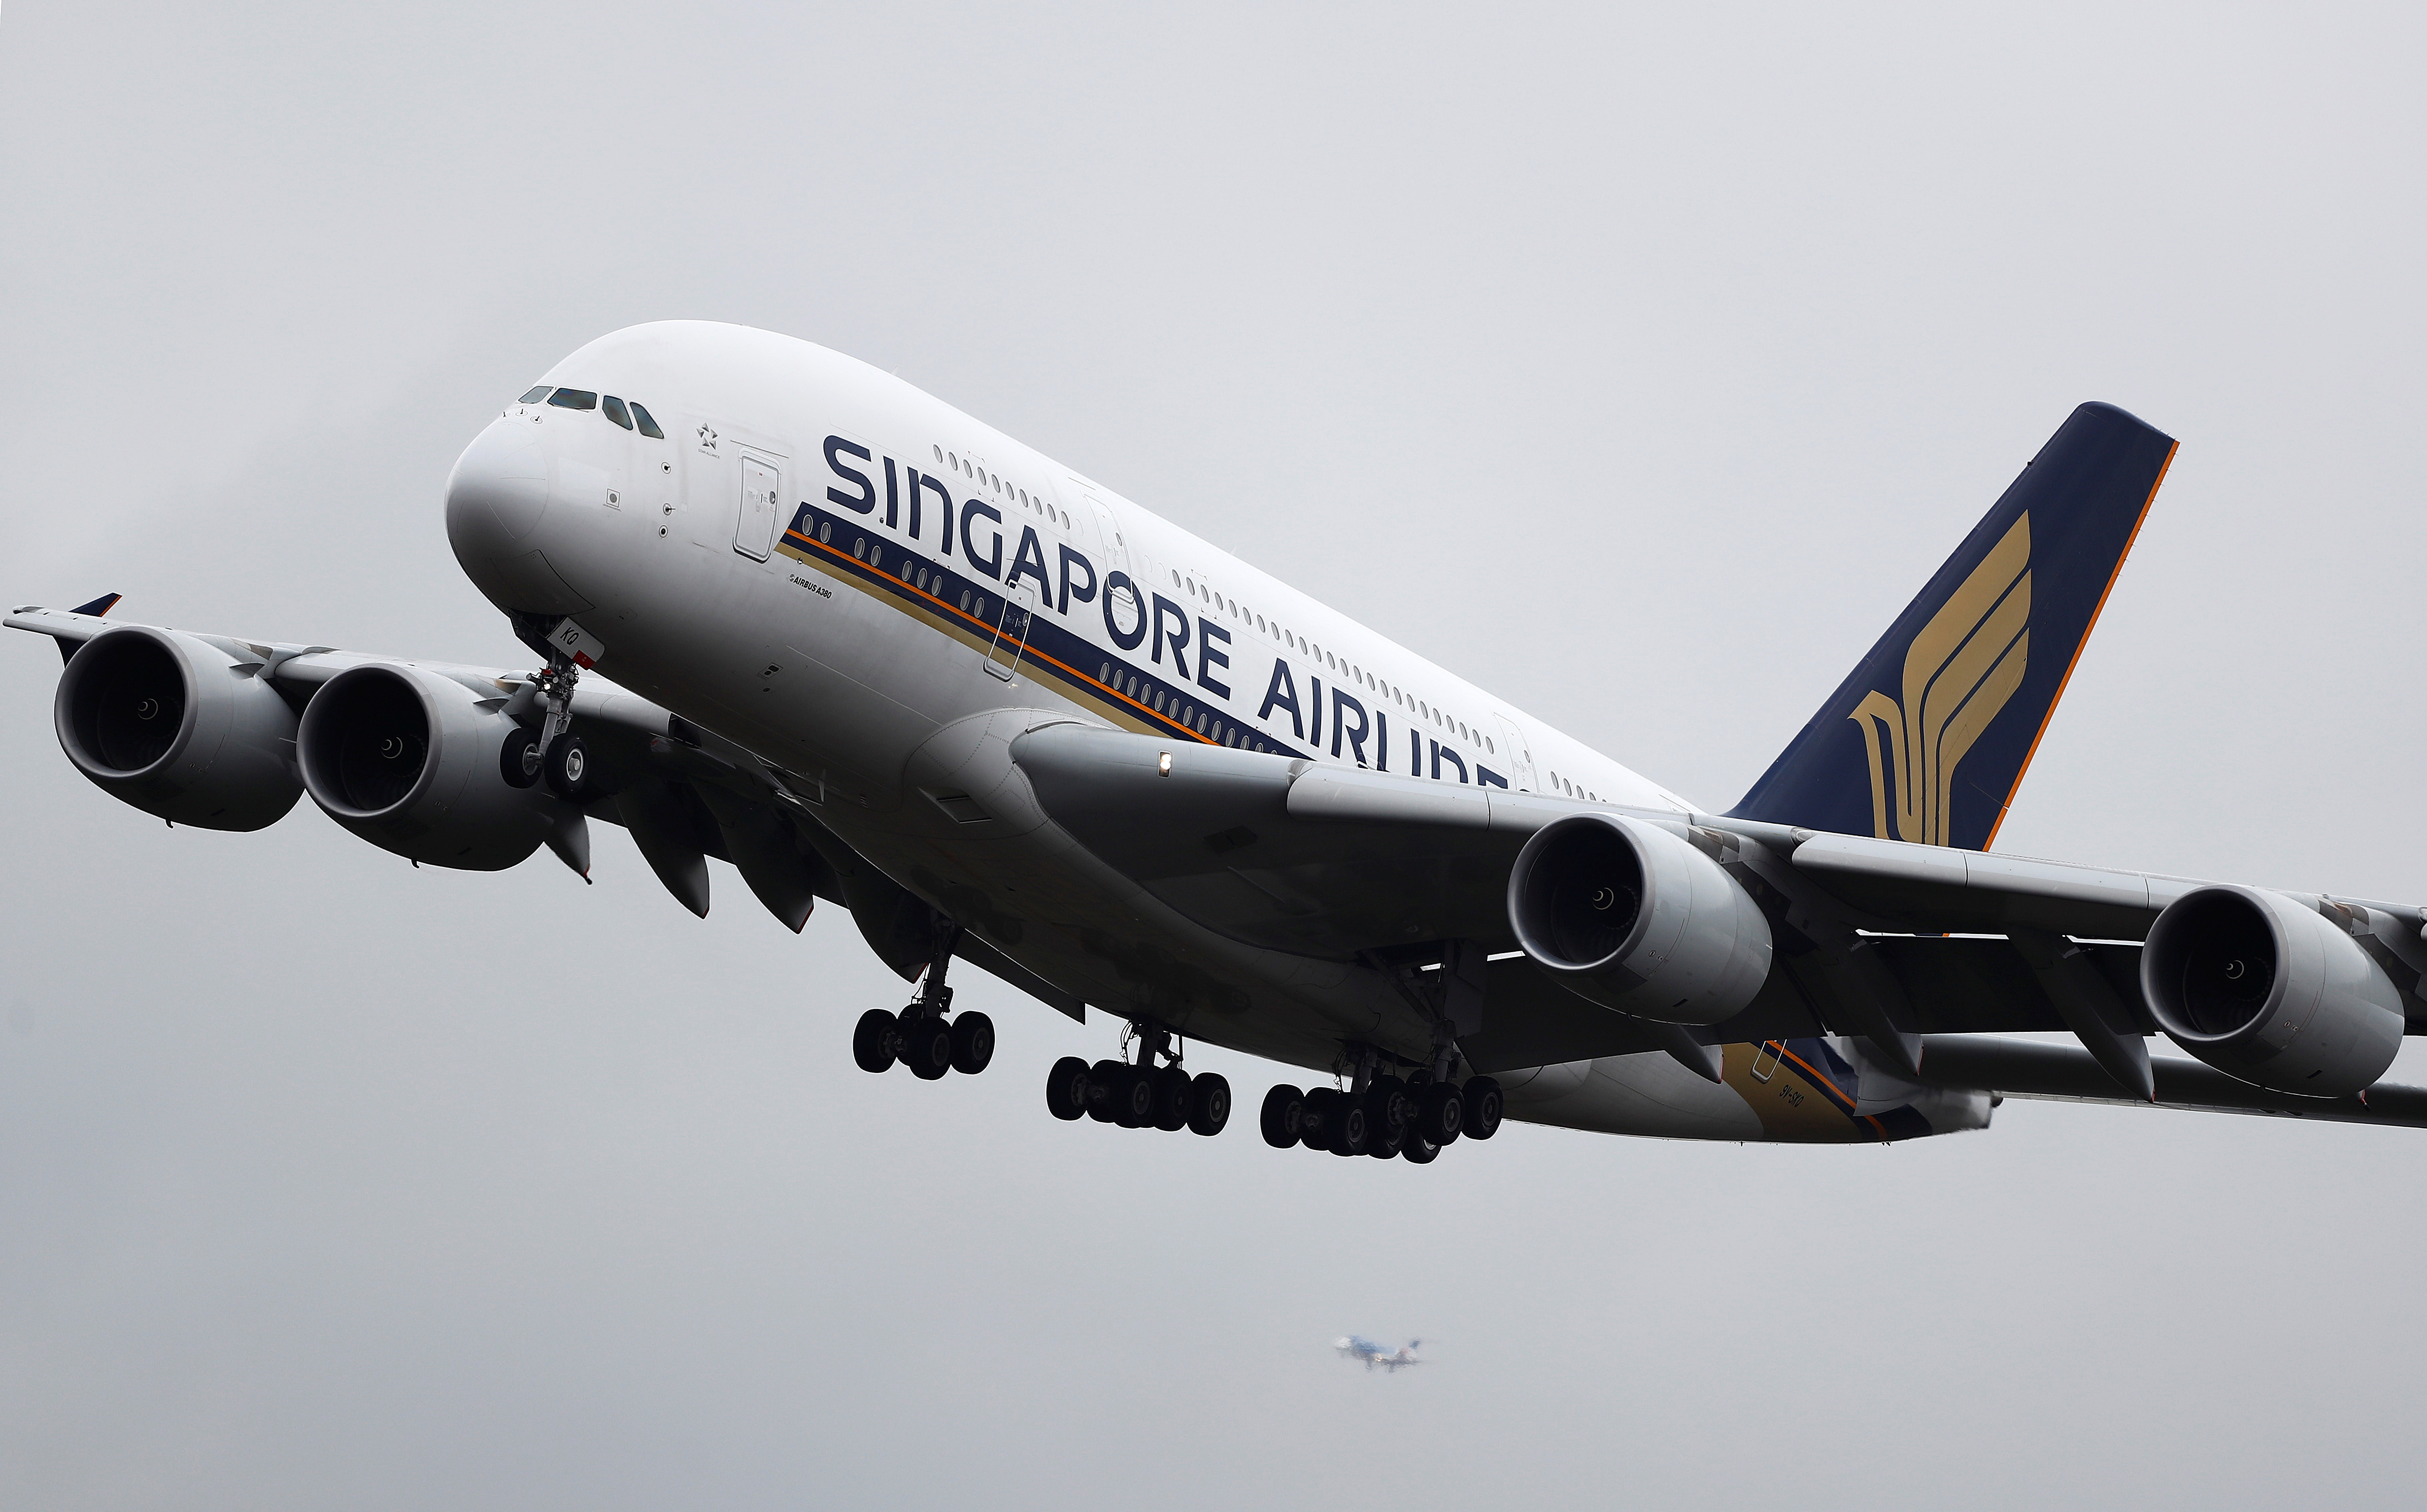 Violentes turbulences lors d'un vol : le PDG de Singapore Airlines présente ses excuses